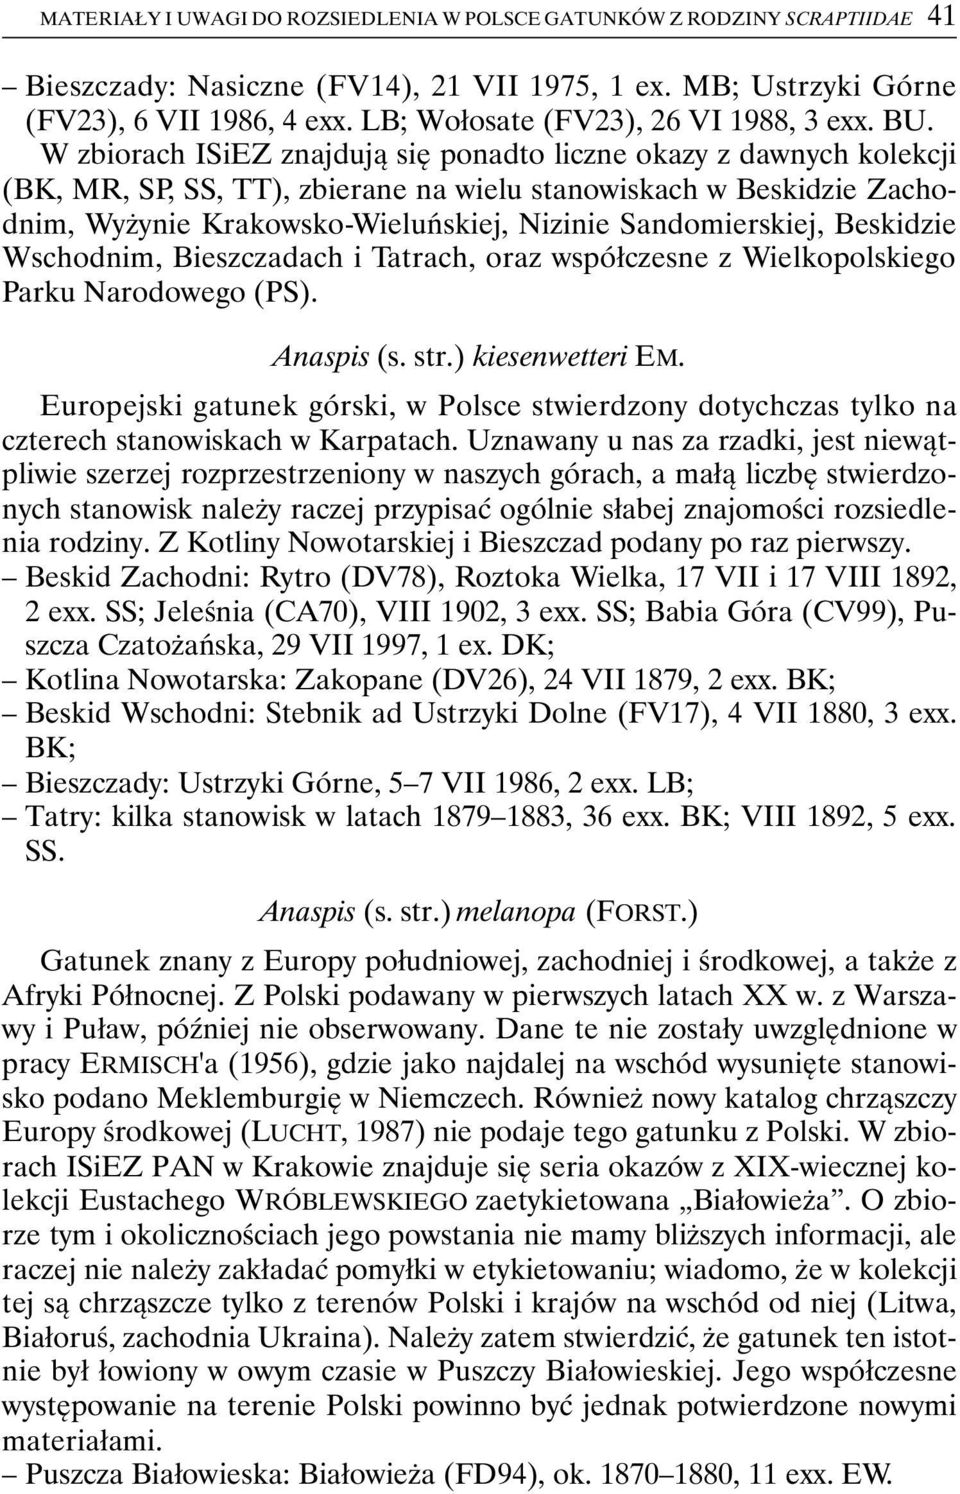 W zbiorach ISiEZ znajdują się ponadto liczne okazy z dawnych kolekcji (BK, MR, SP, SS, TT), zbierane na wielu stanowiskach w Beskidzie Zachodnim, Wyżynie Krakowsko-Wieluńskiej, Nizinie